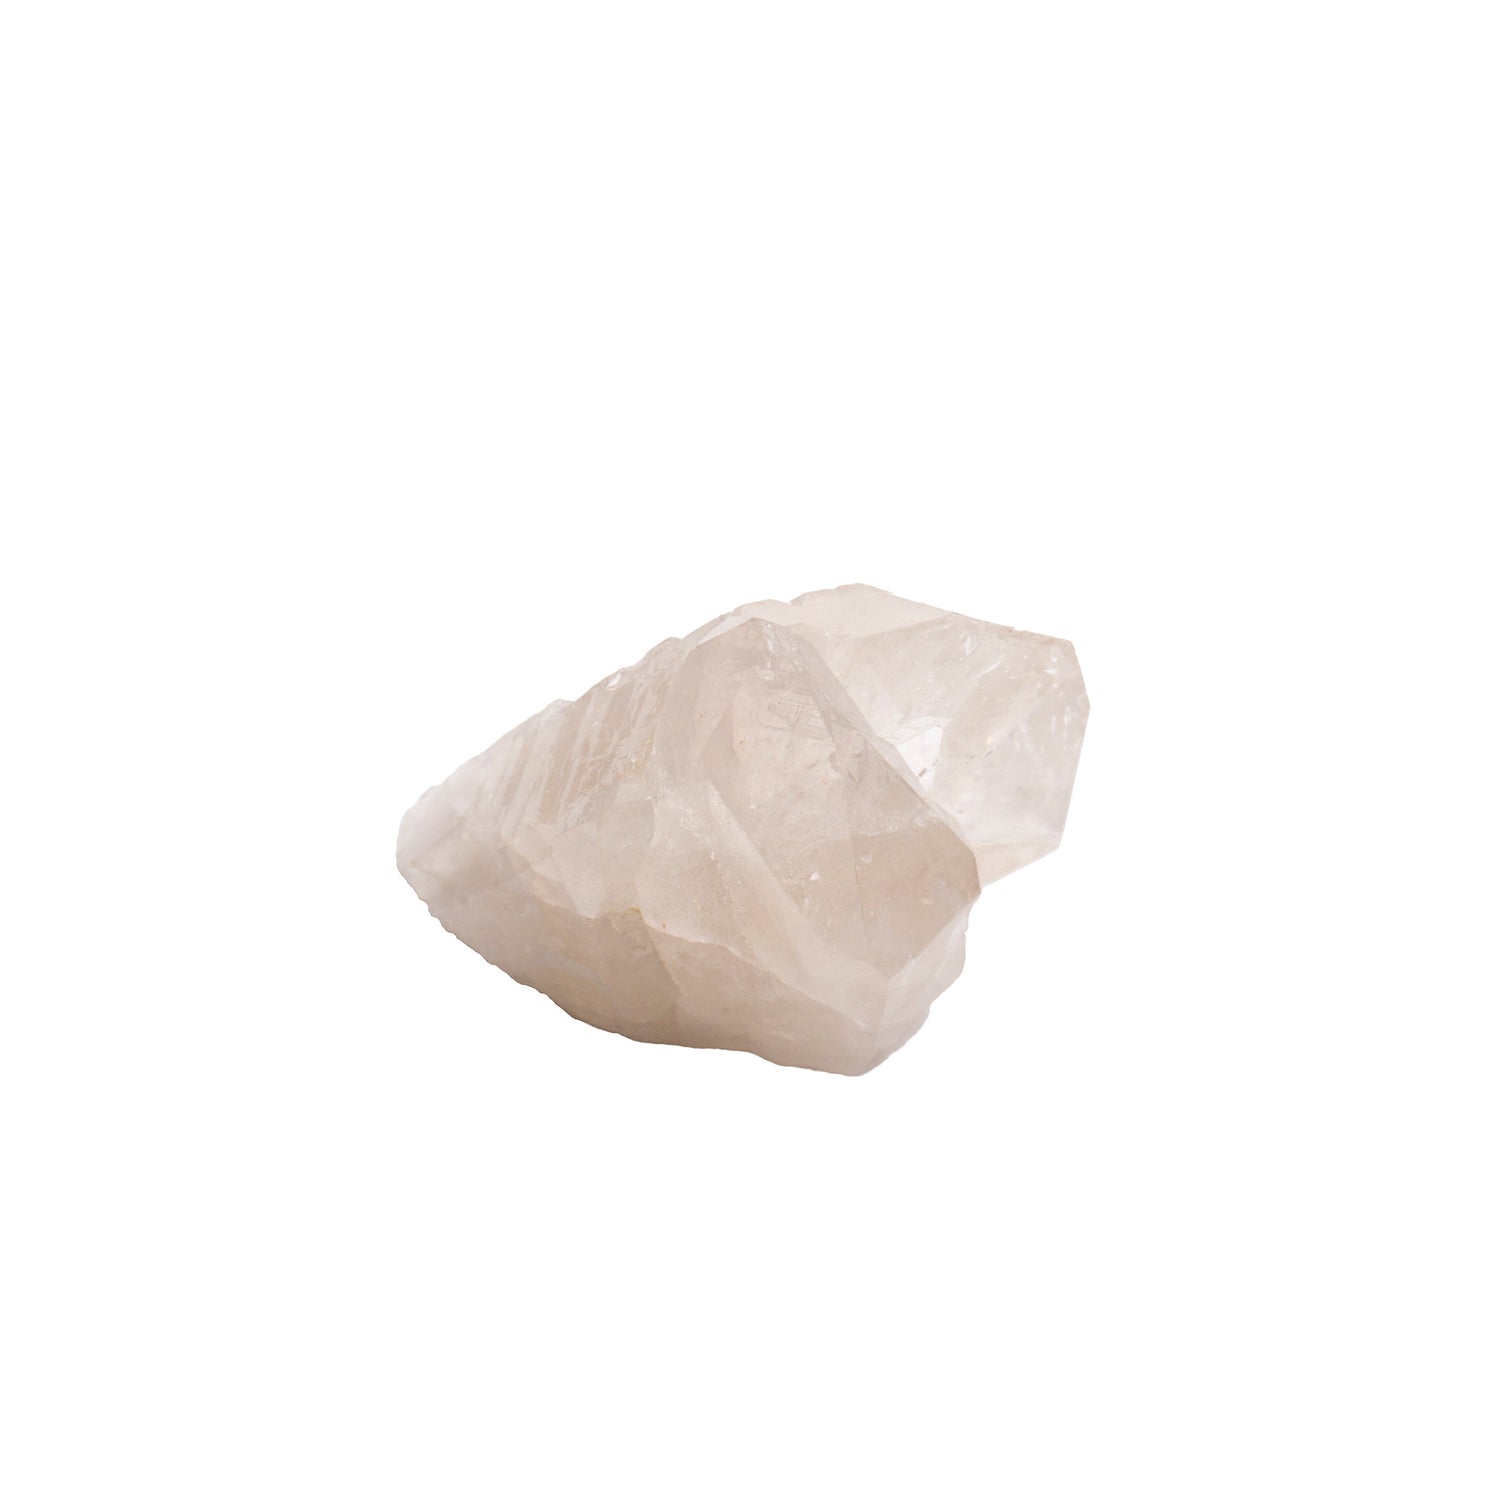 cluster of white quartz crystals